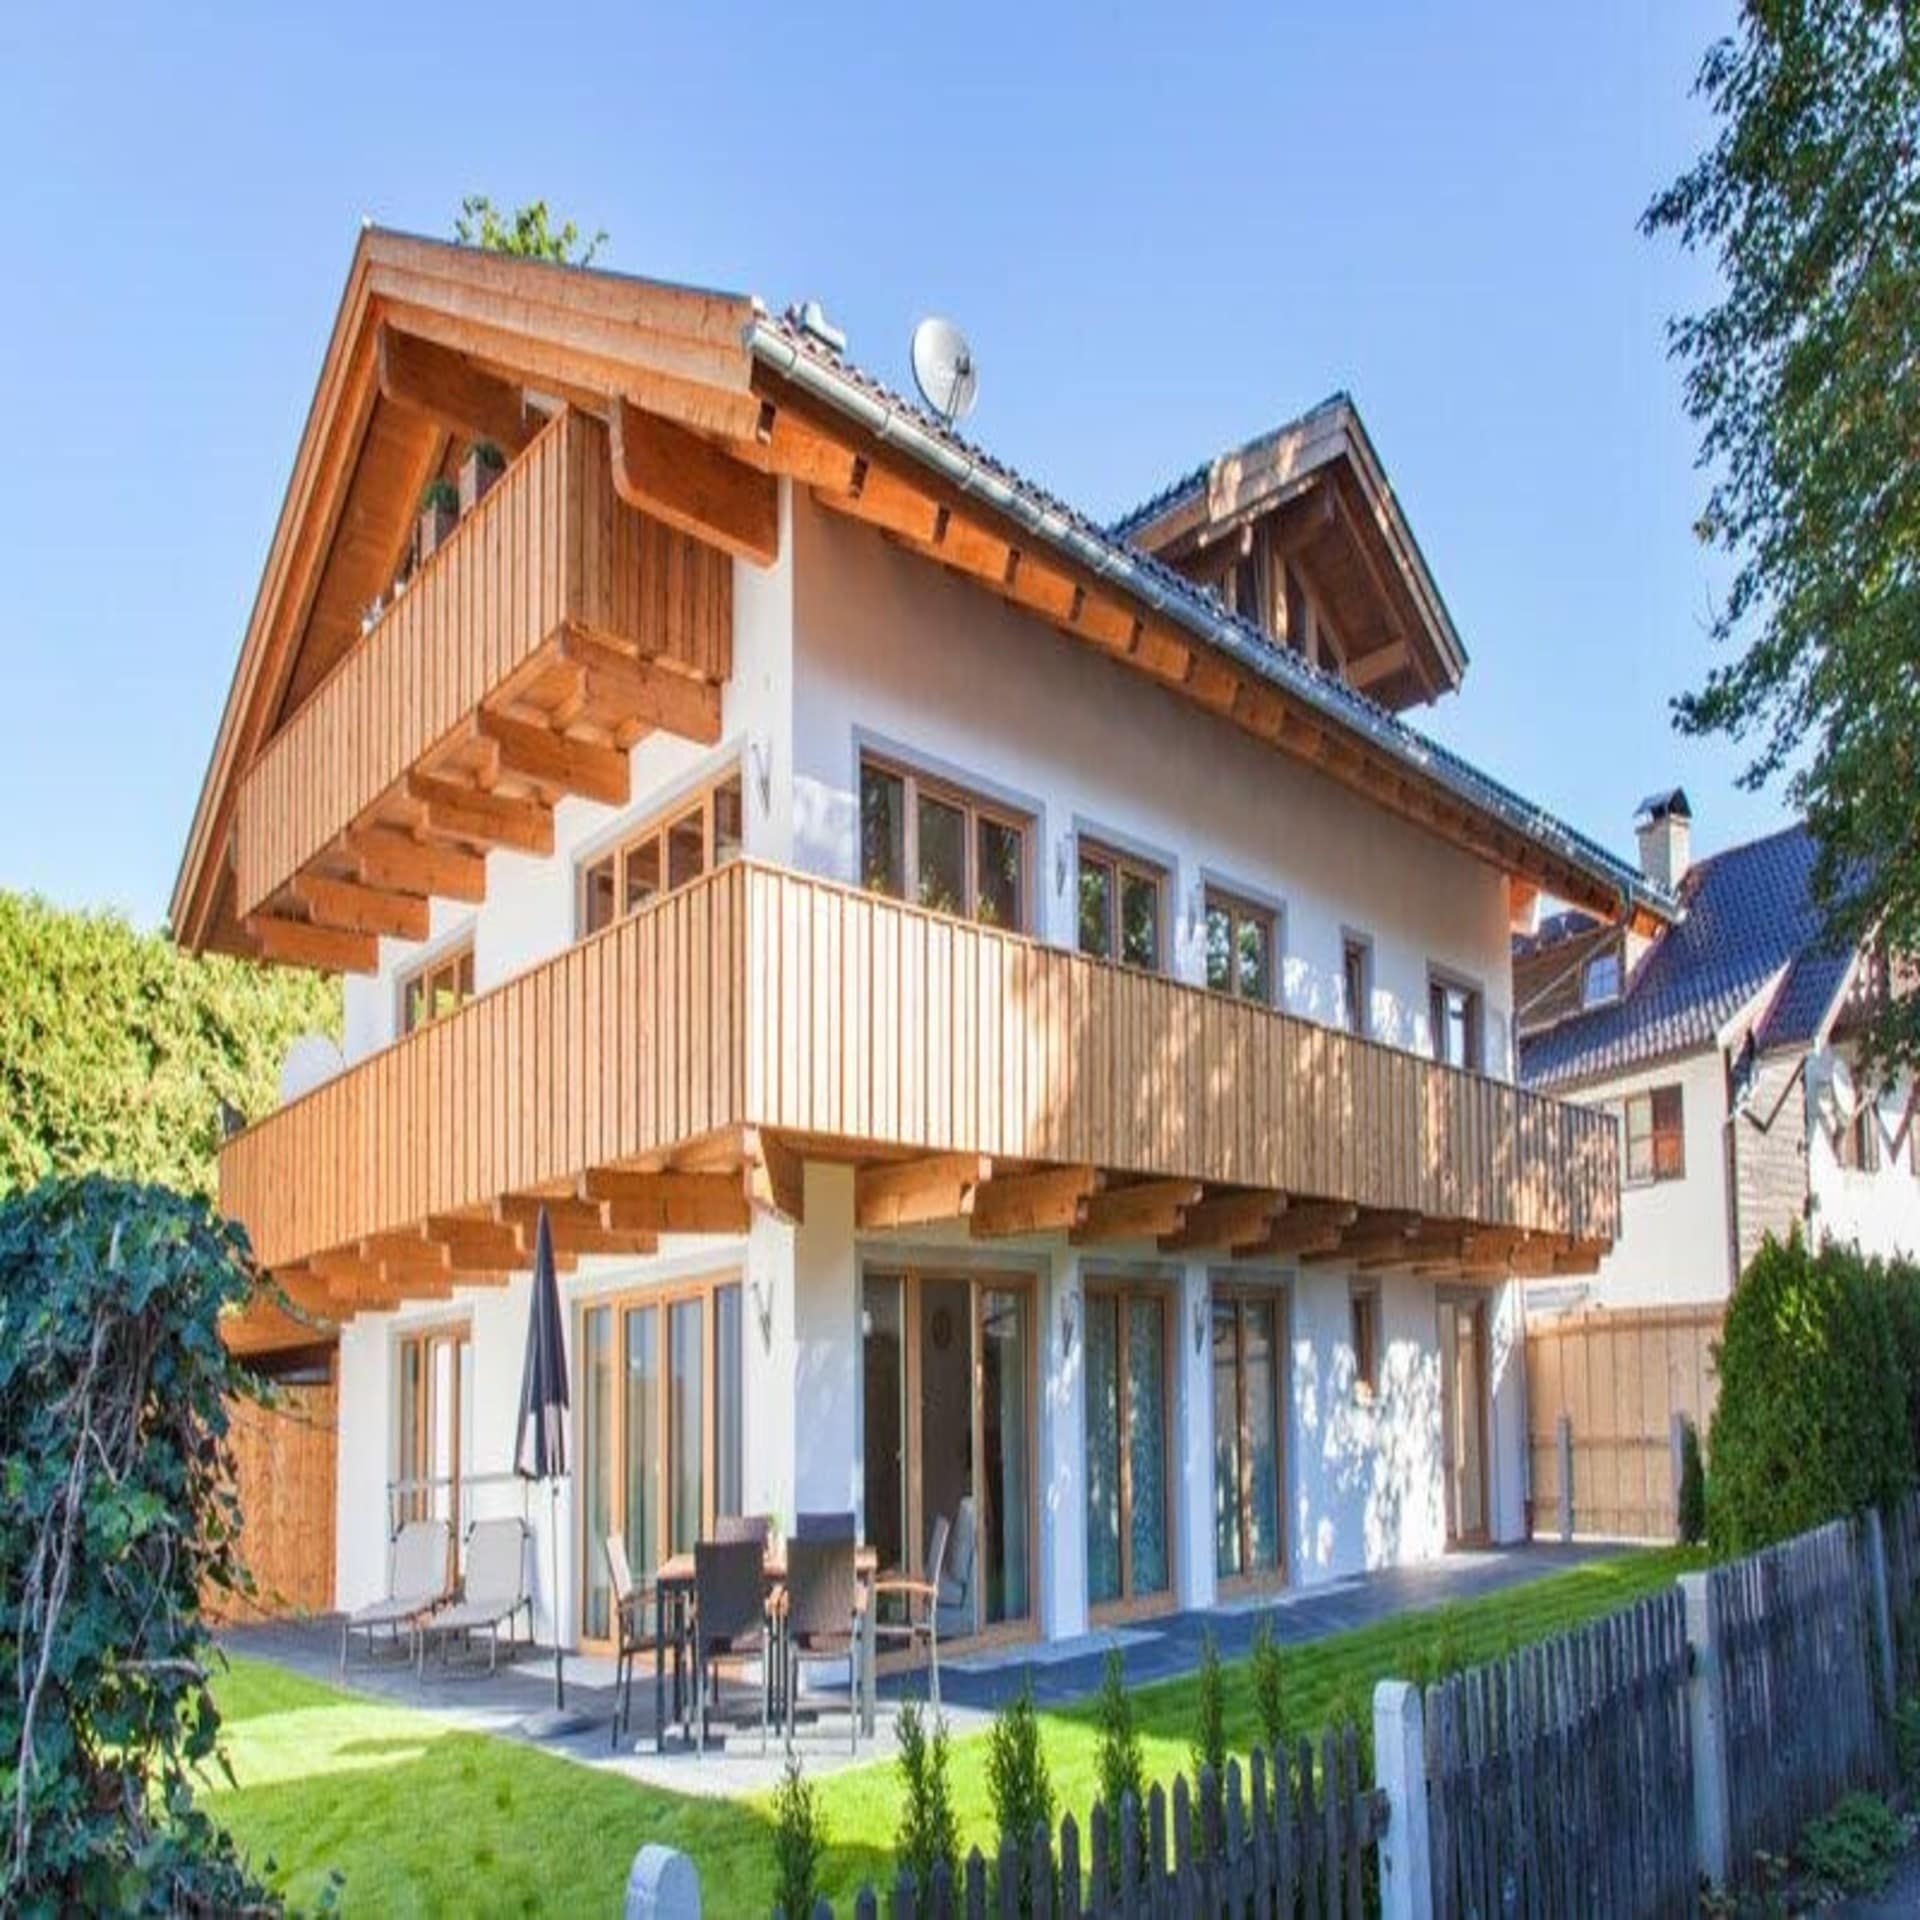 Blick auf ein modernes, bayerisches Haus mit heller Holzverkleidung und Garten.